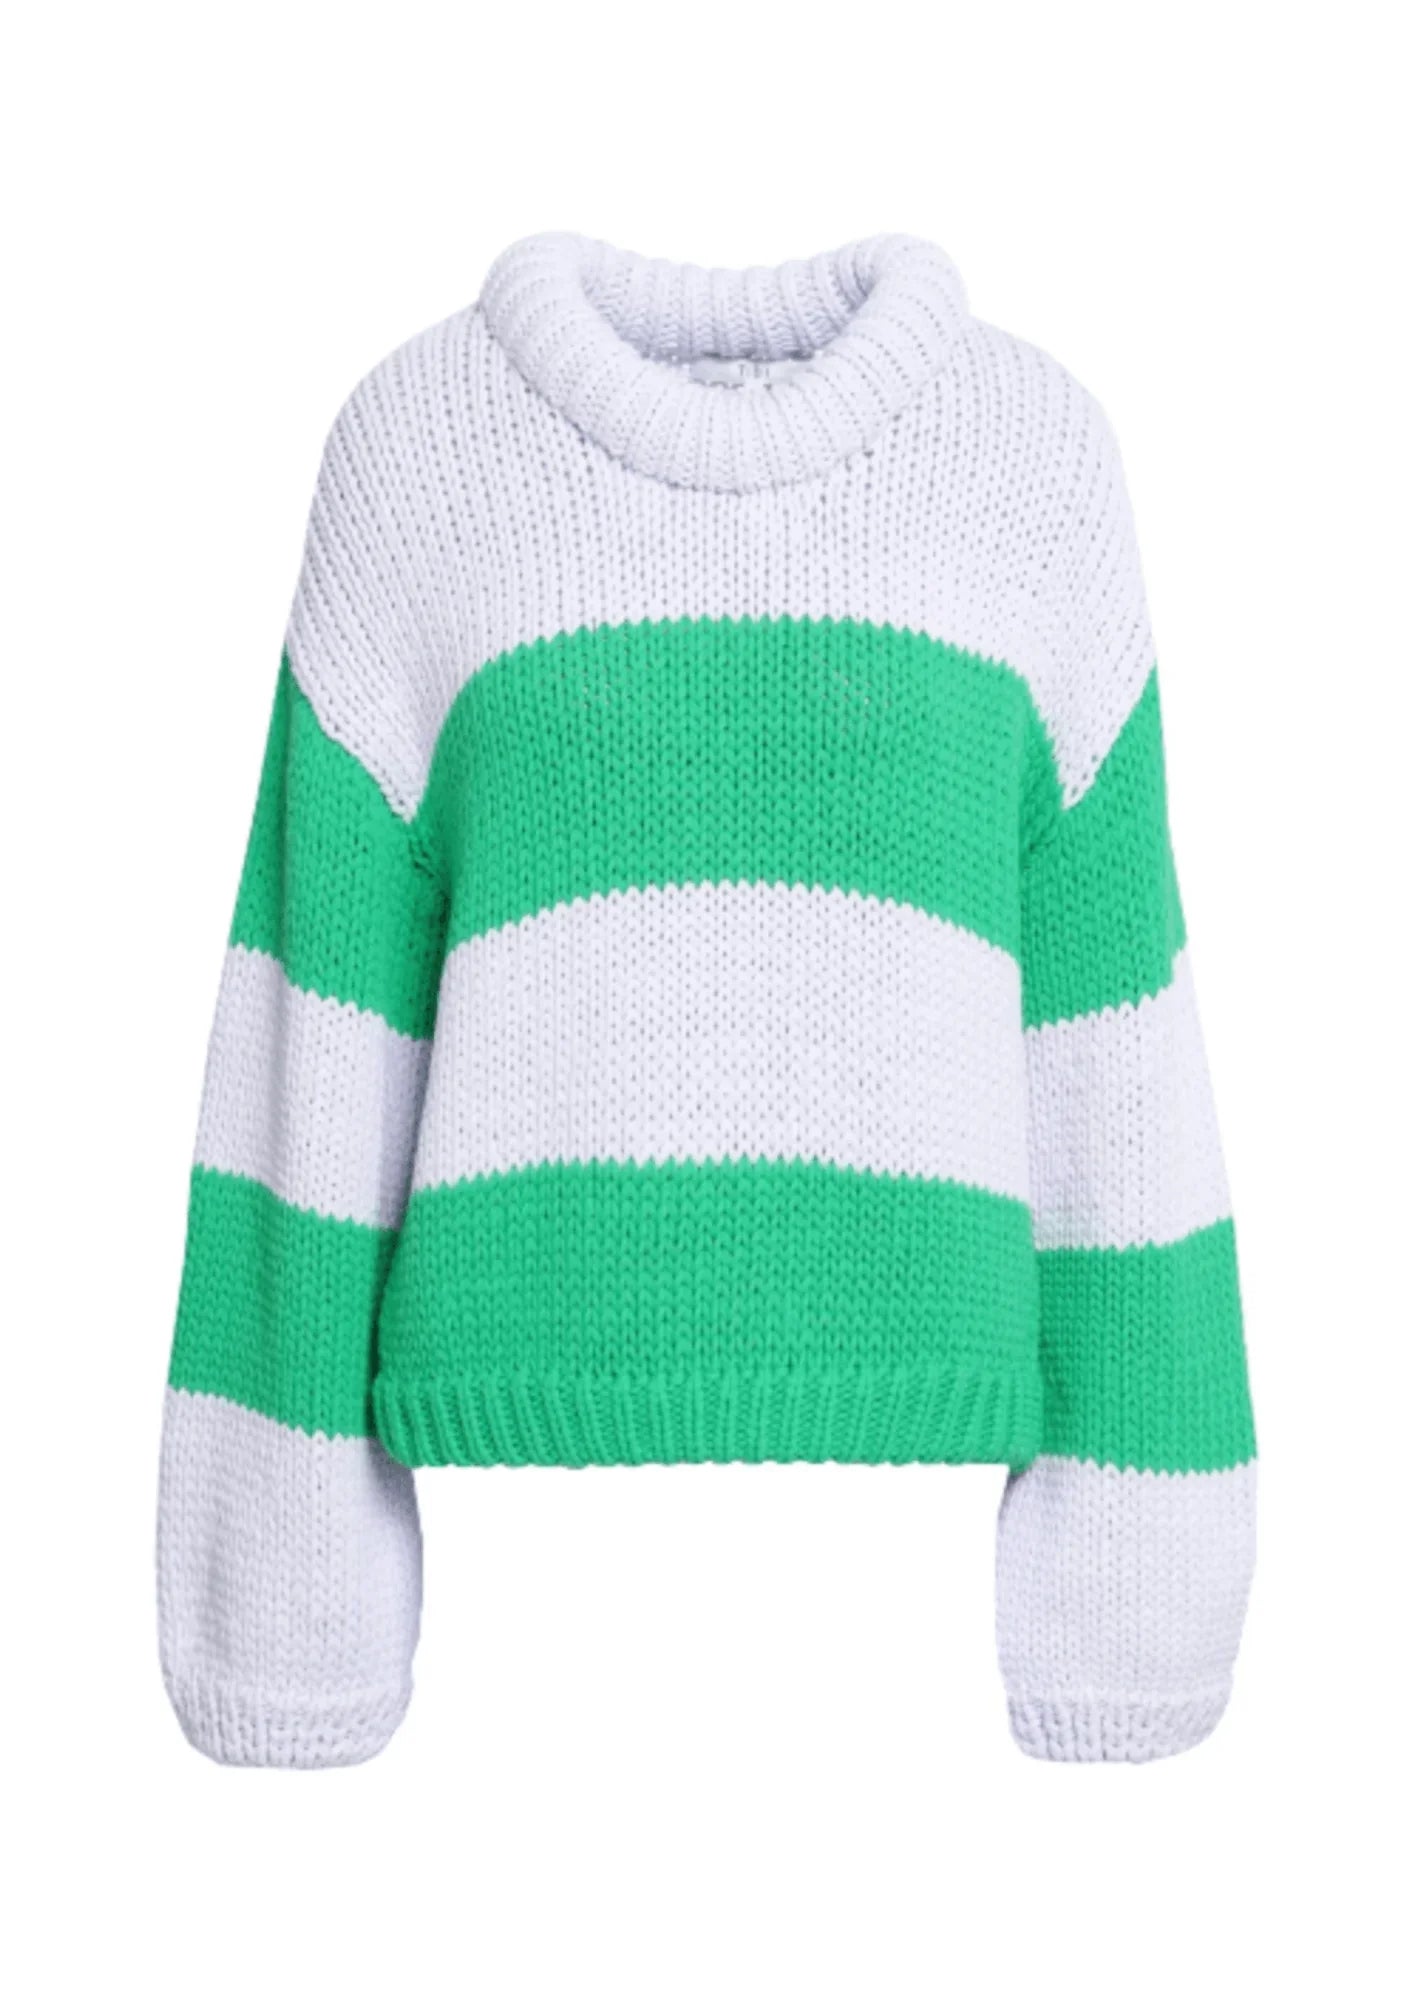 Weißer und grün gestreieter Pullover